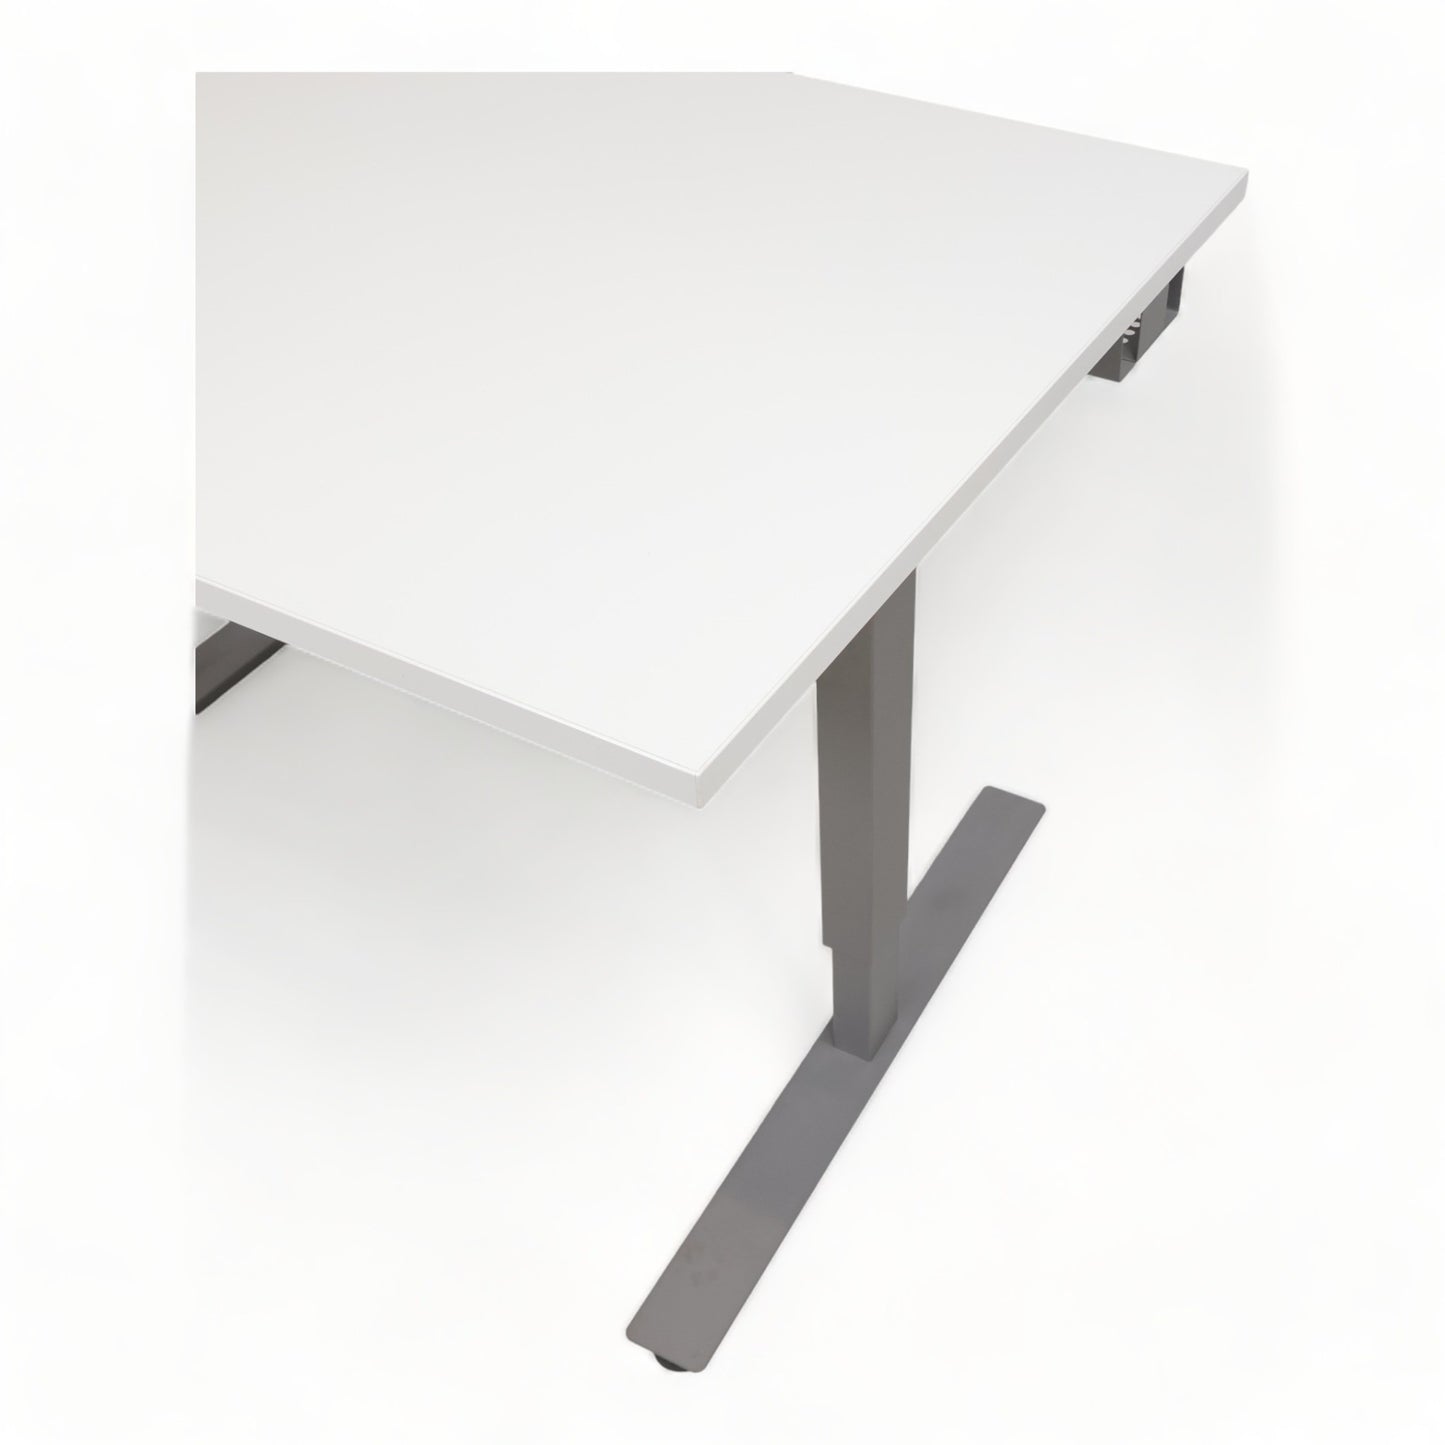 Kvalitetsikret | 120x80, EFG manuell hev/senk skrivebord